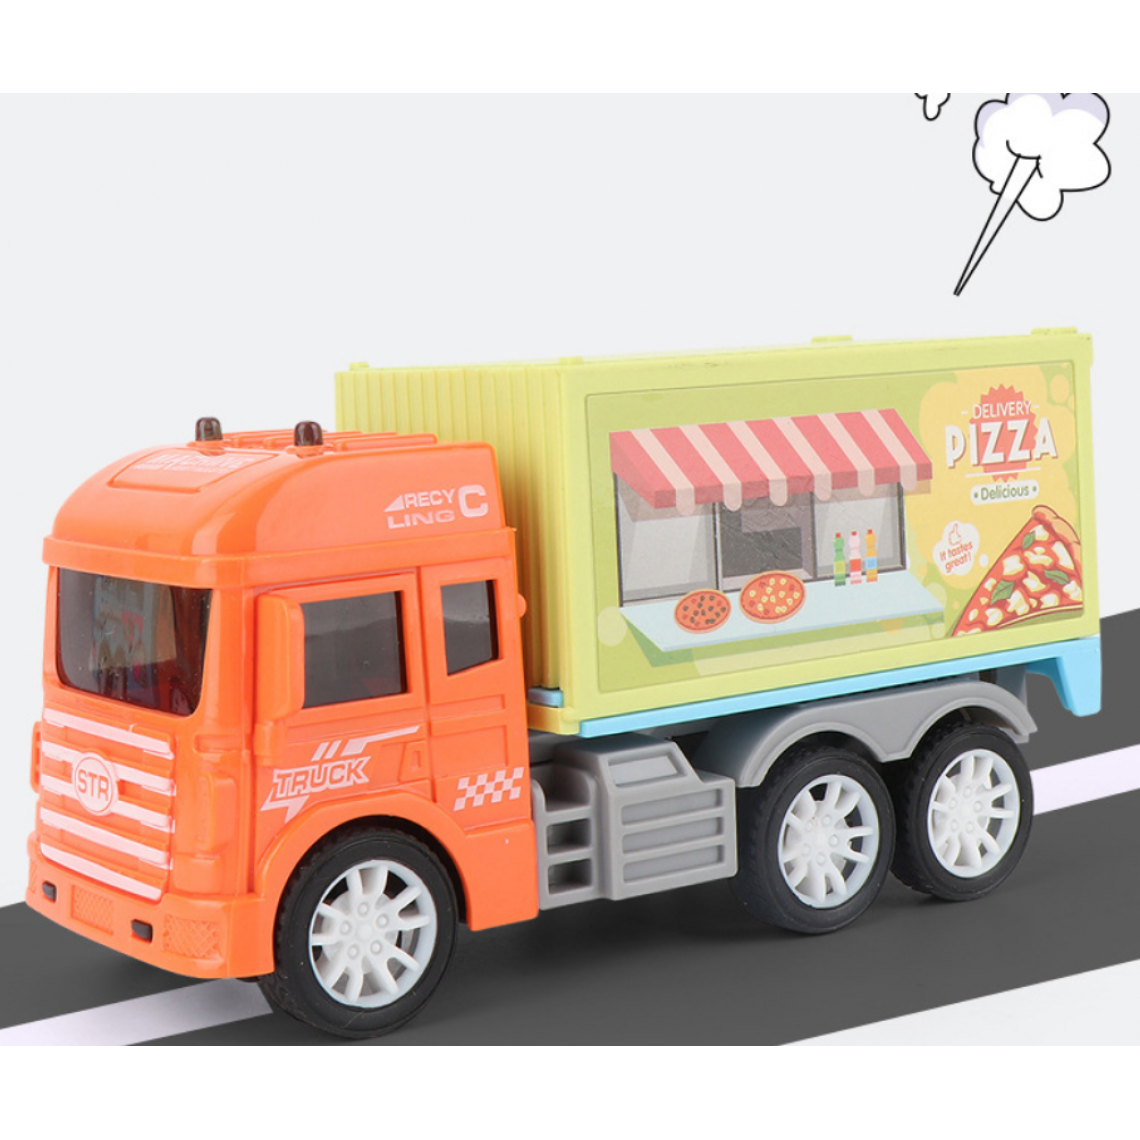 Universal - Jouets pour garçons, dessins animés, distributeurs automatiques à inertie, modèles, chariots cadeaux pour enfants, chariots à manger, hamburgers, camions à pizza, camions à glaces.(Orange) - Voitures